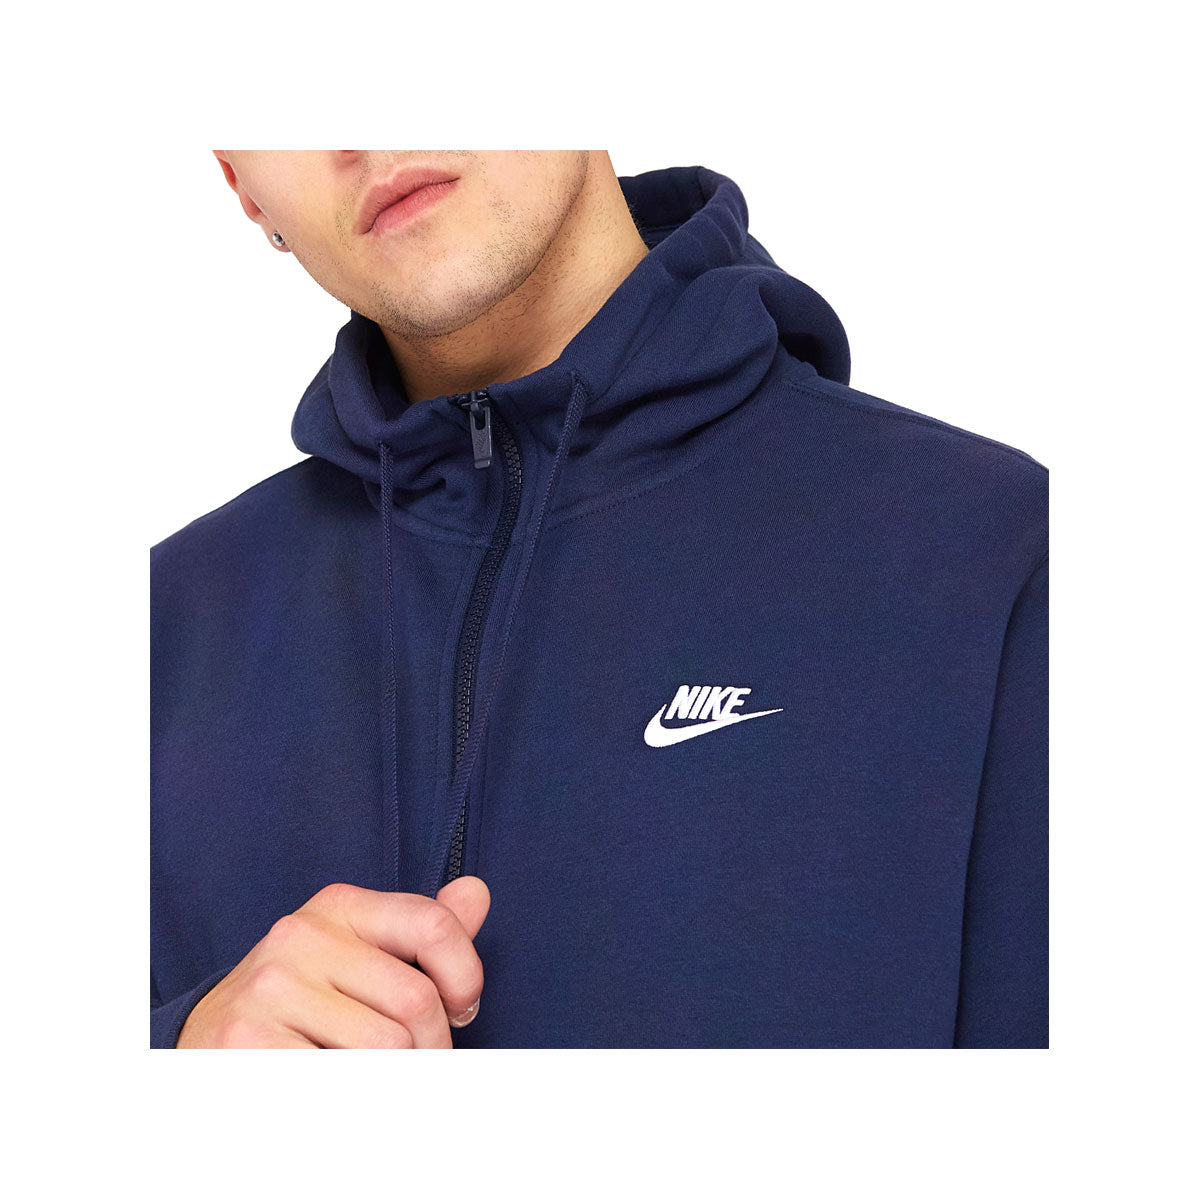 Nike Men's Club Fleece Full-Zip Hoodie